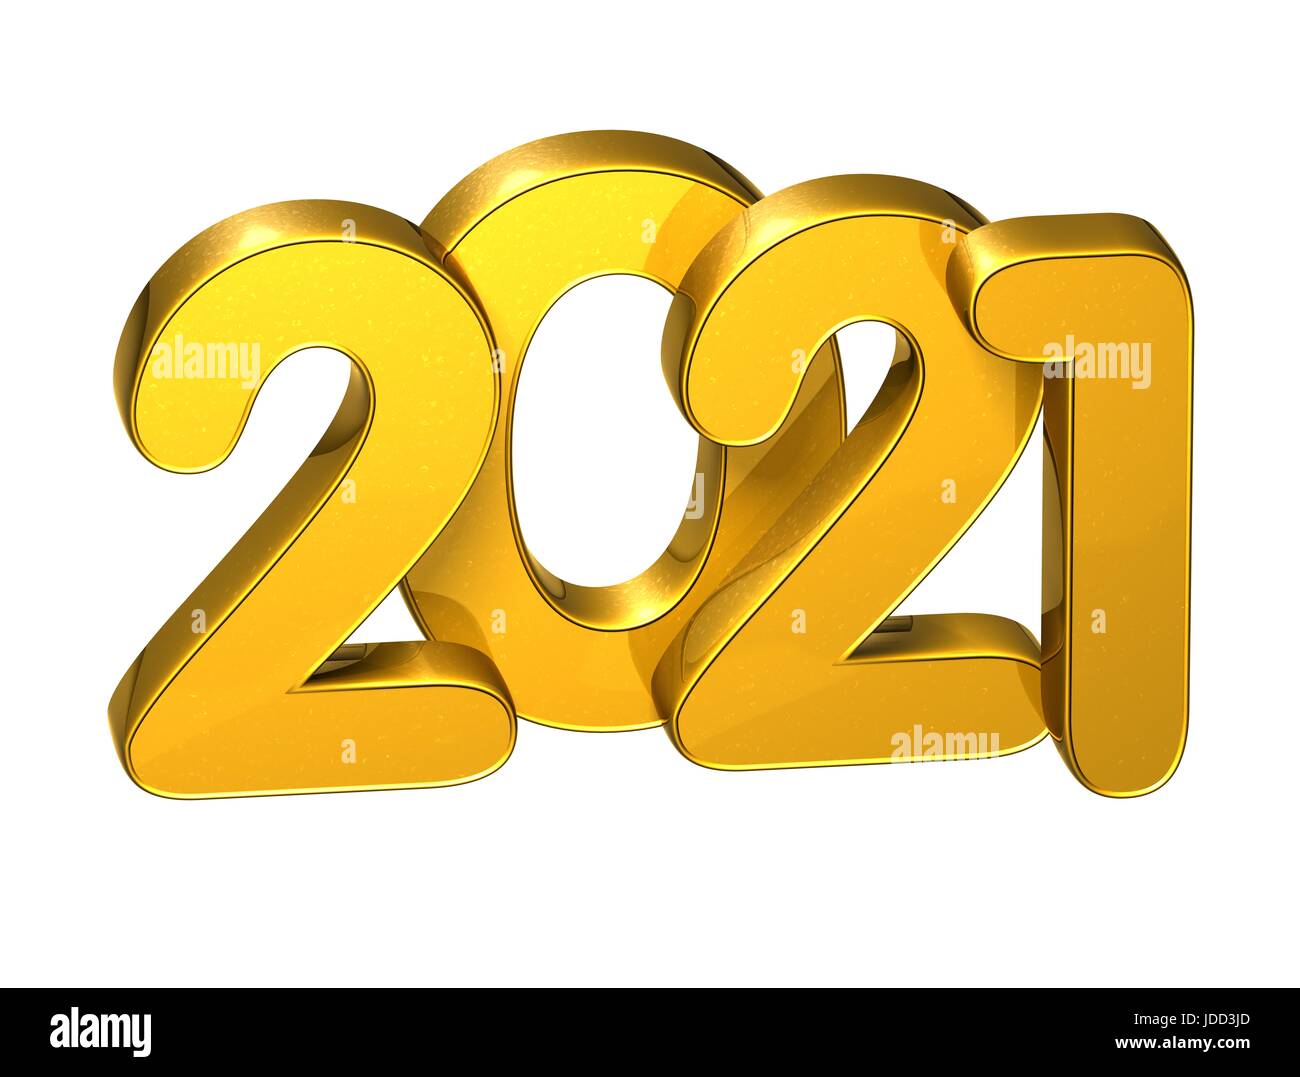 Calendar 2021 Stock Photos & Calendar 2021 Stock Images - Alamy